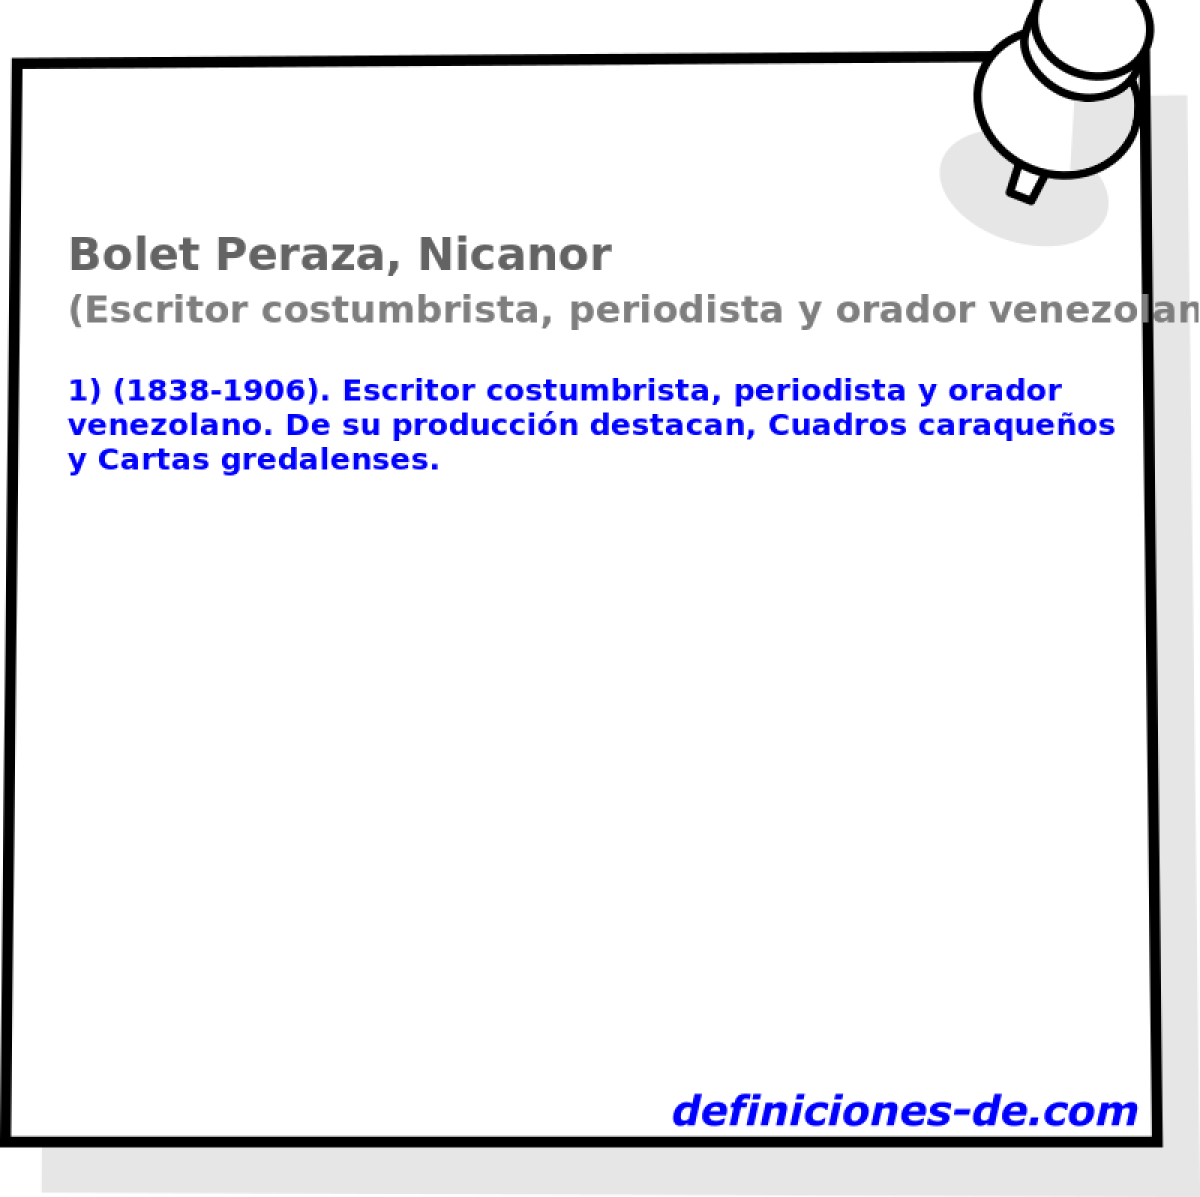 Bolet Peraza, Nicanor (Escritor costumbrista, periodista y orador venezolano)